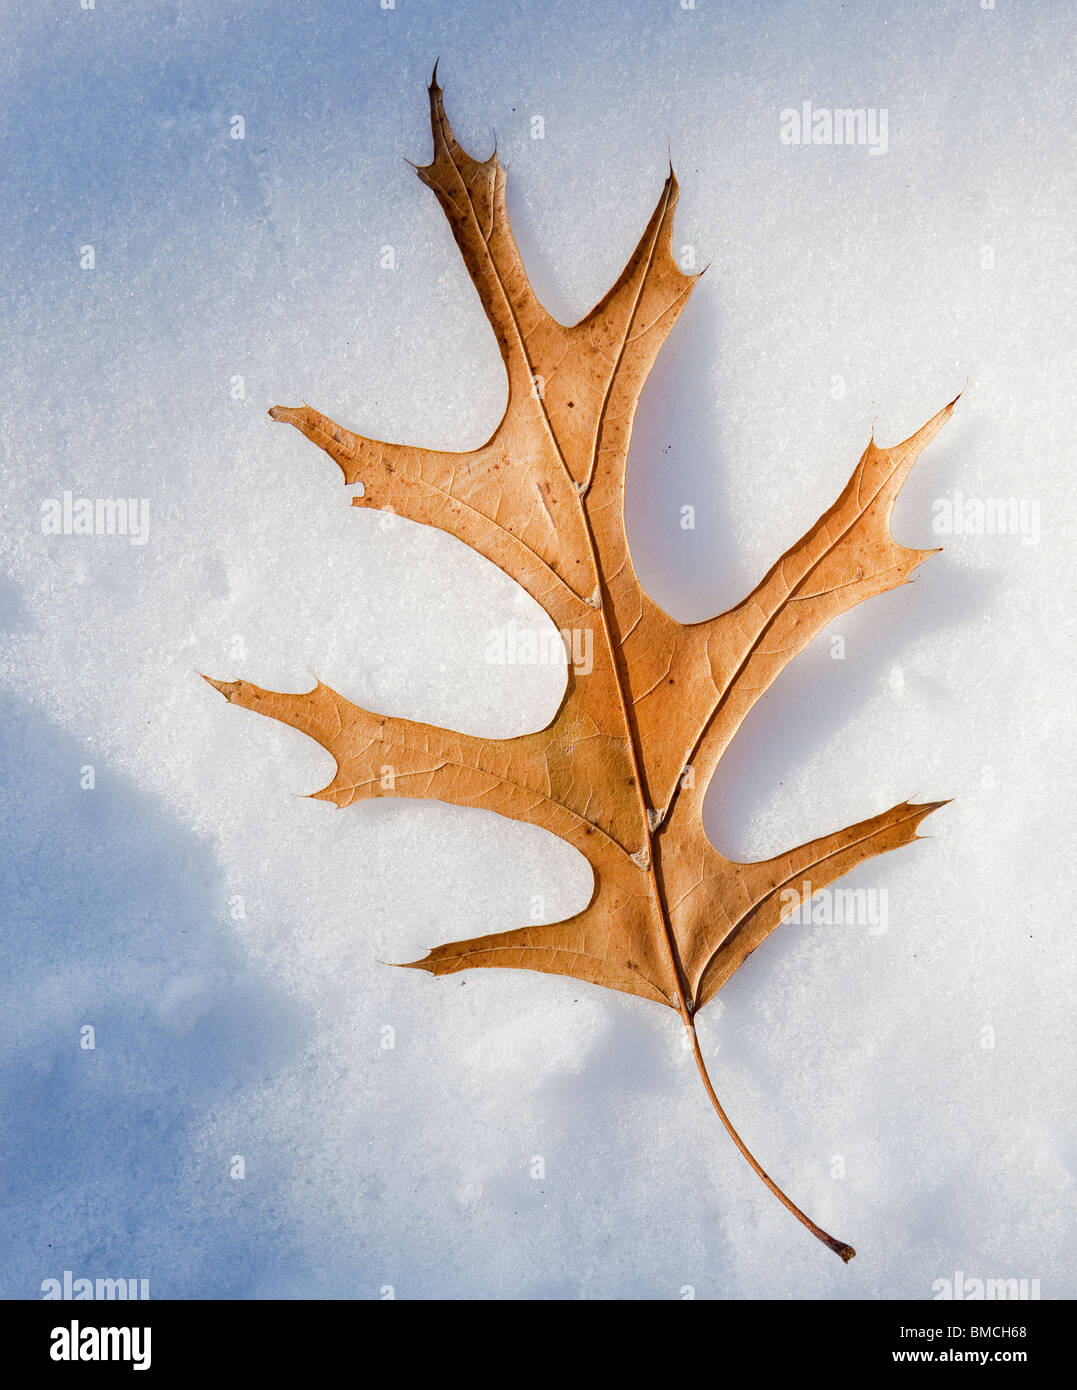 Une feuille de chêne Pin tombé se trouve sur la neige fraîche. Banque D'Images